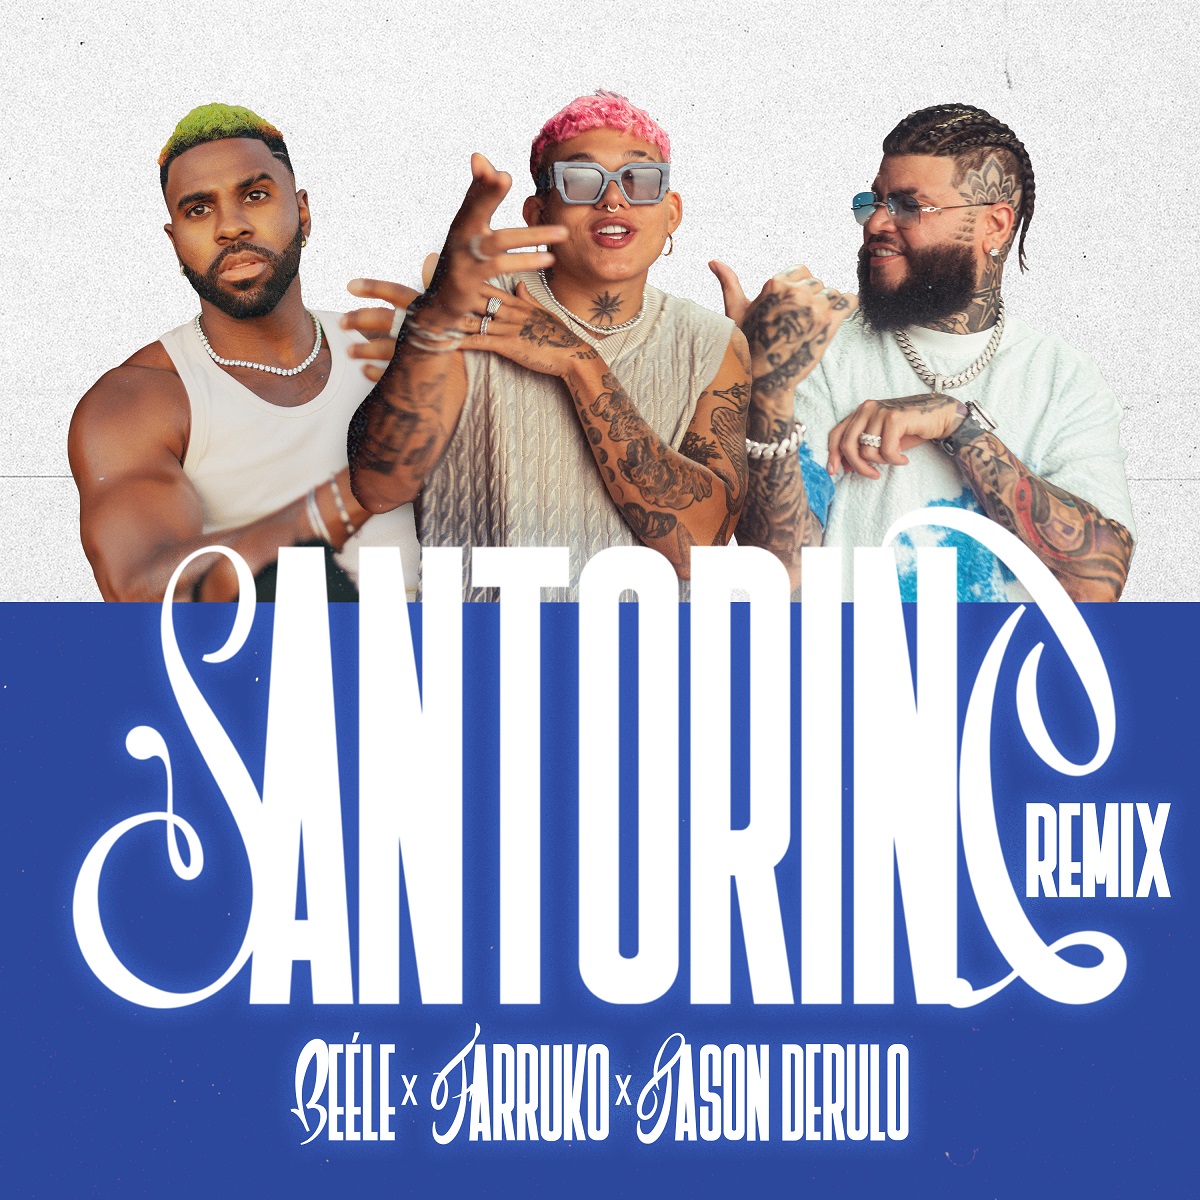 Beéle, Farruko y Jason Derulo se juntan en el remix de “Santorini”